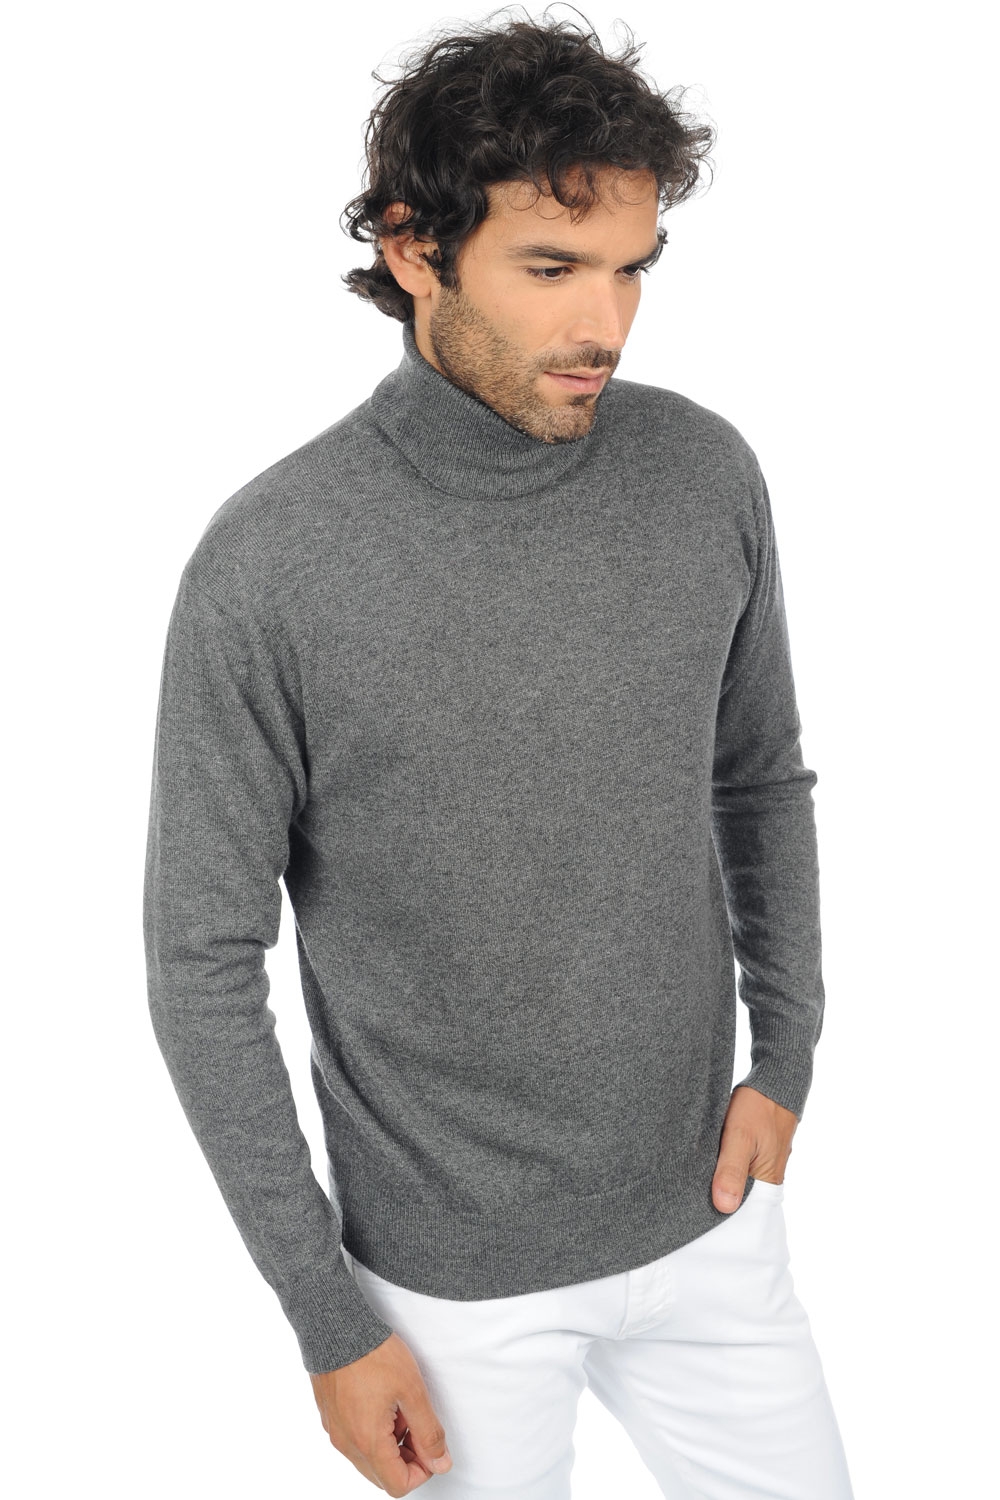 Cashmere men premium sweaters edgar premium premium graphite 4xl